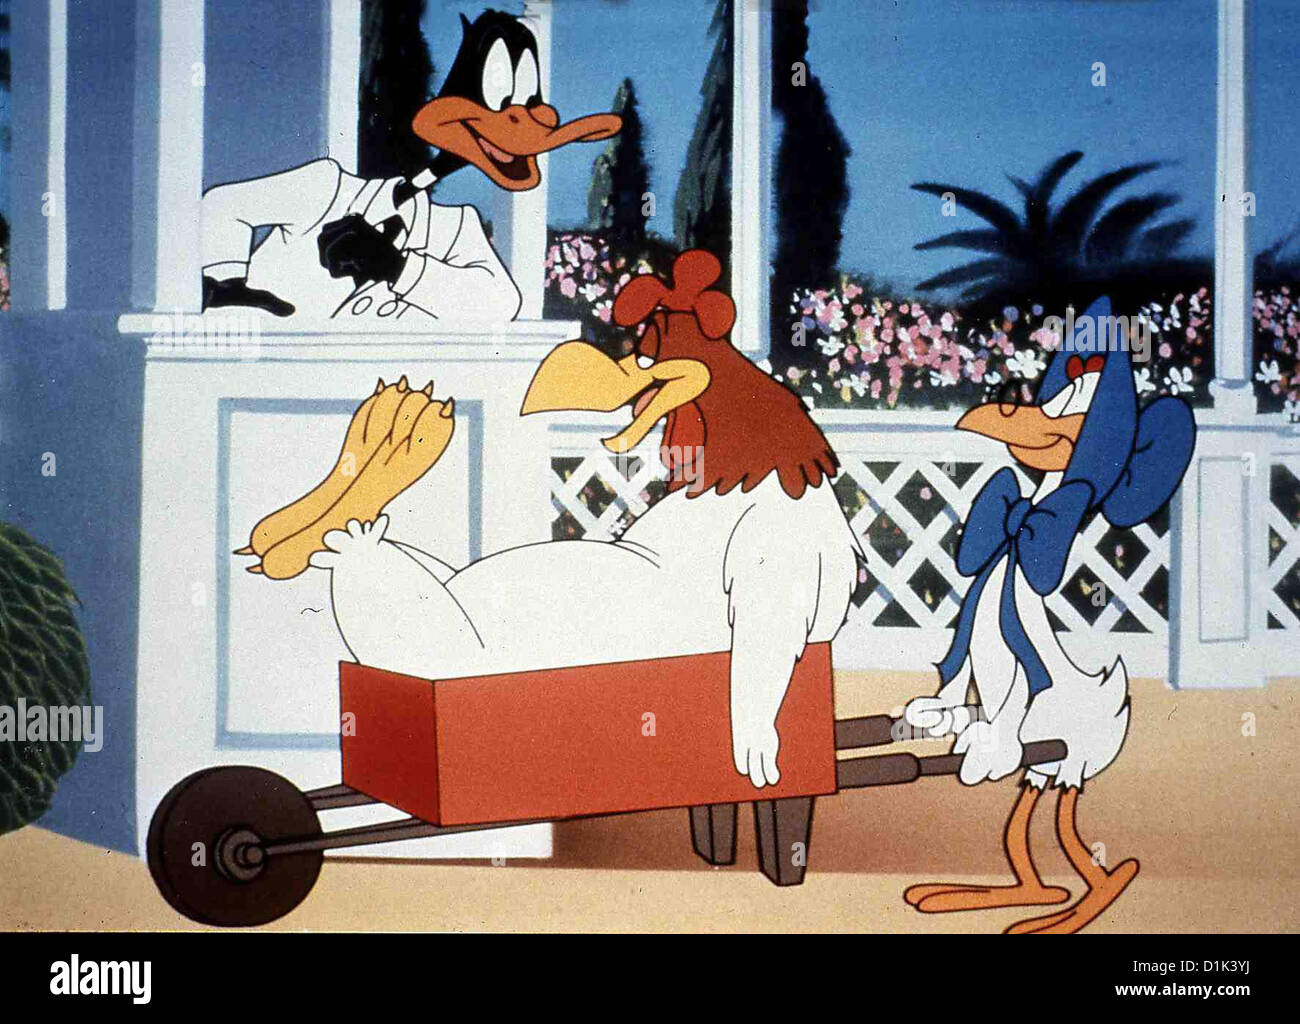 Daffy Ducks Phantastische Reise Daffy Duck's Movie: Fantastic Island Auf  einer tropisch-paradiesischen Insel ist alles Stock Photo - Alamy